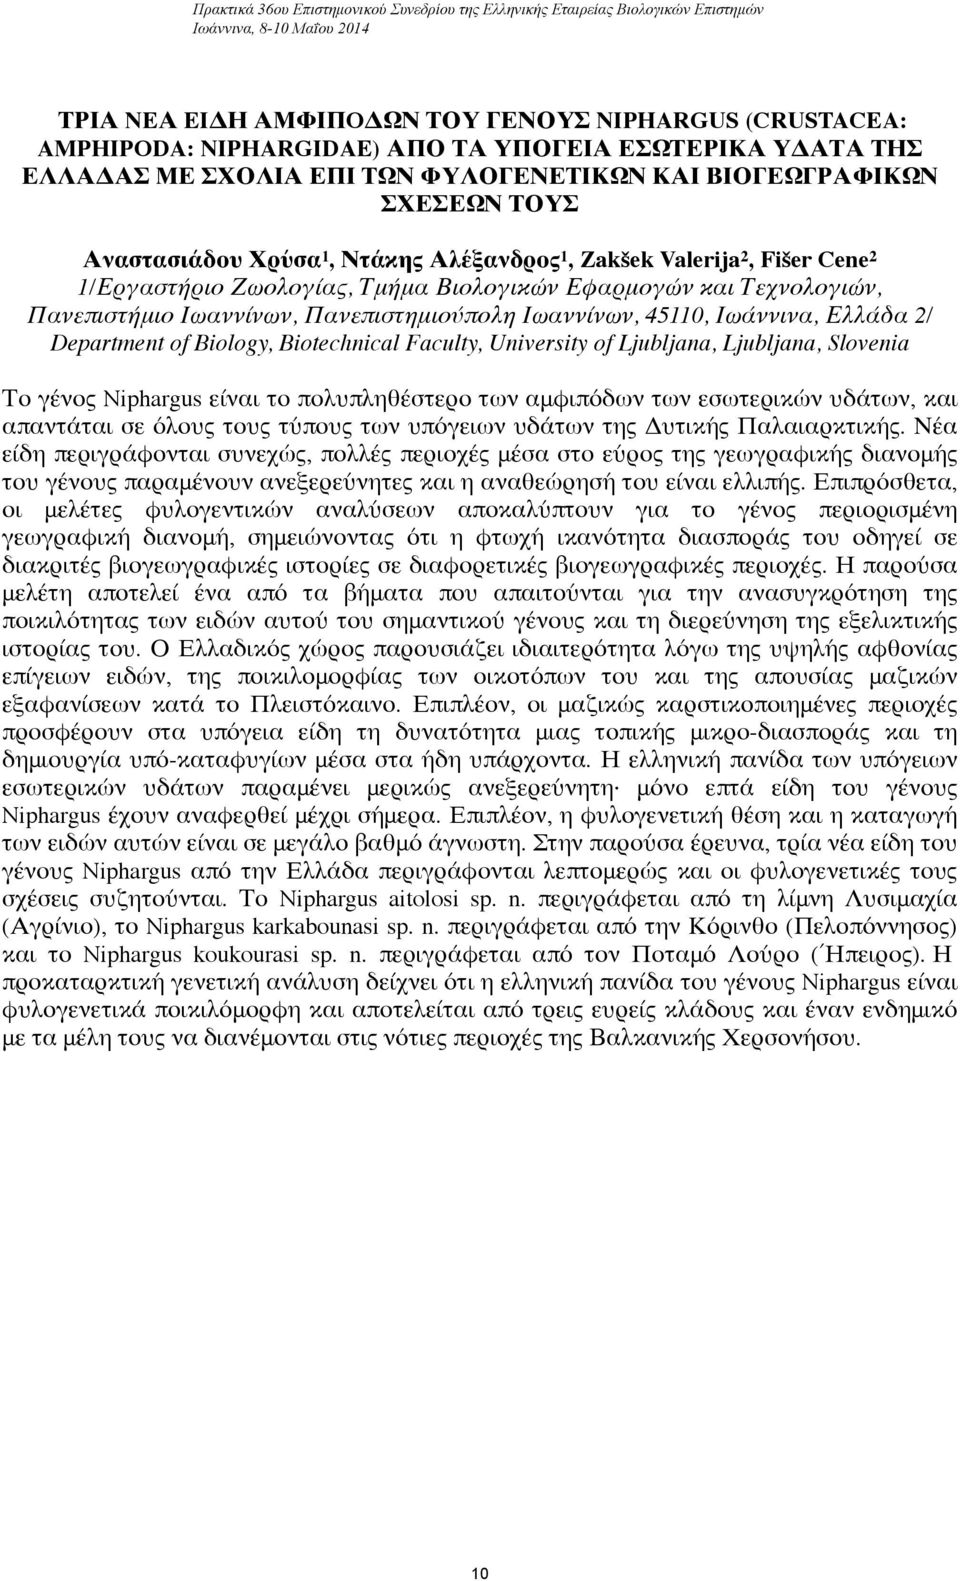 Τμήμα Βιολογικών Εφαρμογών και Τεχνολογιών, Πανεπιστήμιο Ιωαννίνων, Πανεπιστημιούπολη Ιωαννίνων, 45110, Ιωάννινα, Ελλάδα 2/ Department of Biology, Biotechnical Faculty, University of Ljubljana,